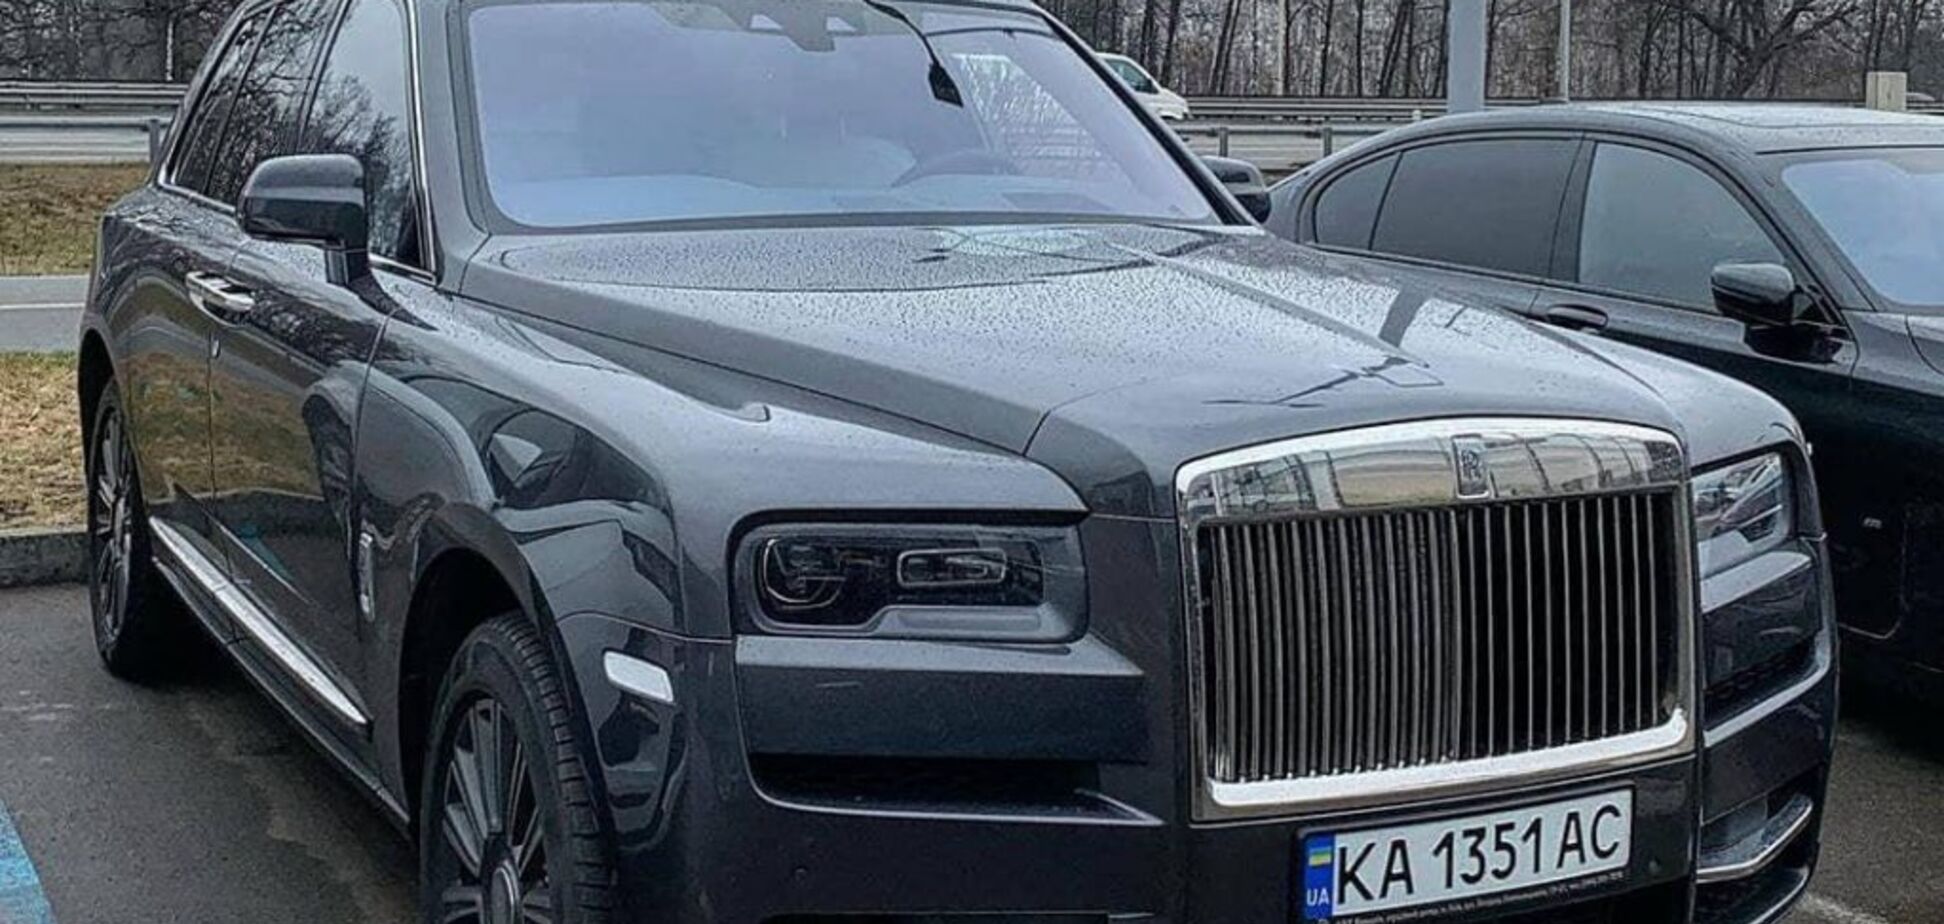 Украинские богачи всё чаще ставят на свои авто обычные номера